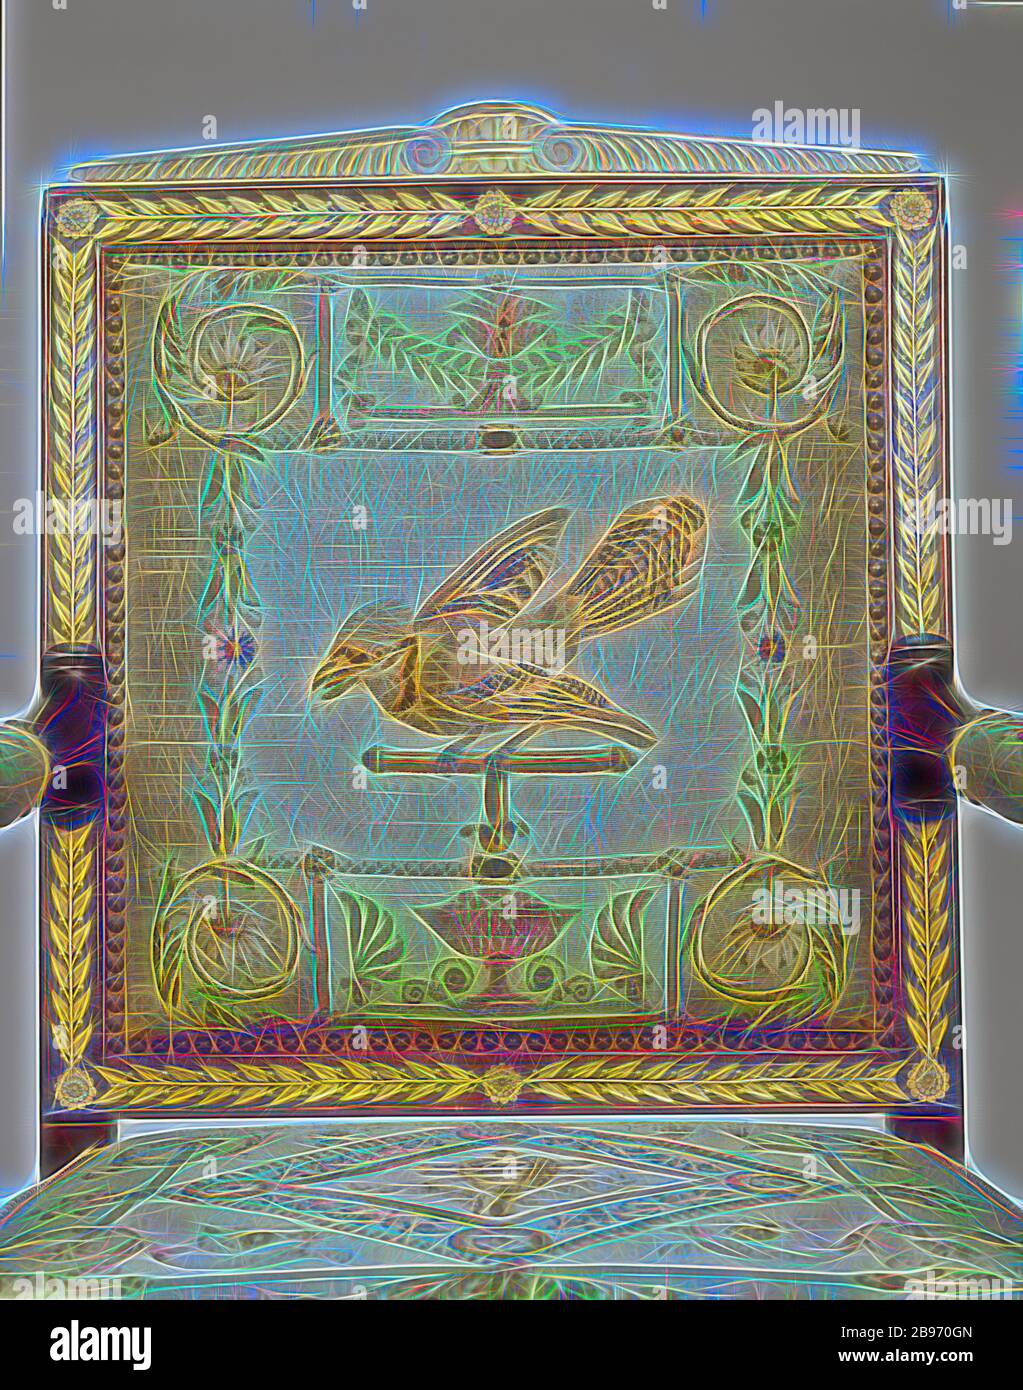 Una poltrona, Cornici attribuite a François-Honoré-Georges Jacob-Desmalter (francese, 1770 - 1841), tappezzeria per arazzi del Manufactory di Beauvais (francese, fondato nel 1664), Beauvais, Francia, circa 1810, mogano e faggio, supporti in bronzo dorato, lana e seta, 100,6 × 63,5 × 50,8 cm (39 5/8 × 25 × 20 in), immaginata da Gibon design di calore allegro di luminosità e raggi di luce radianza. Arte classica reinventata con un tocco moderno. La fotografia ispirata al futurismo, che abbraccia l'energia dinamica della tecnologia moderna, del movimento, della velocità e rivoluziona la cultura. Foto Stock